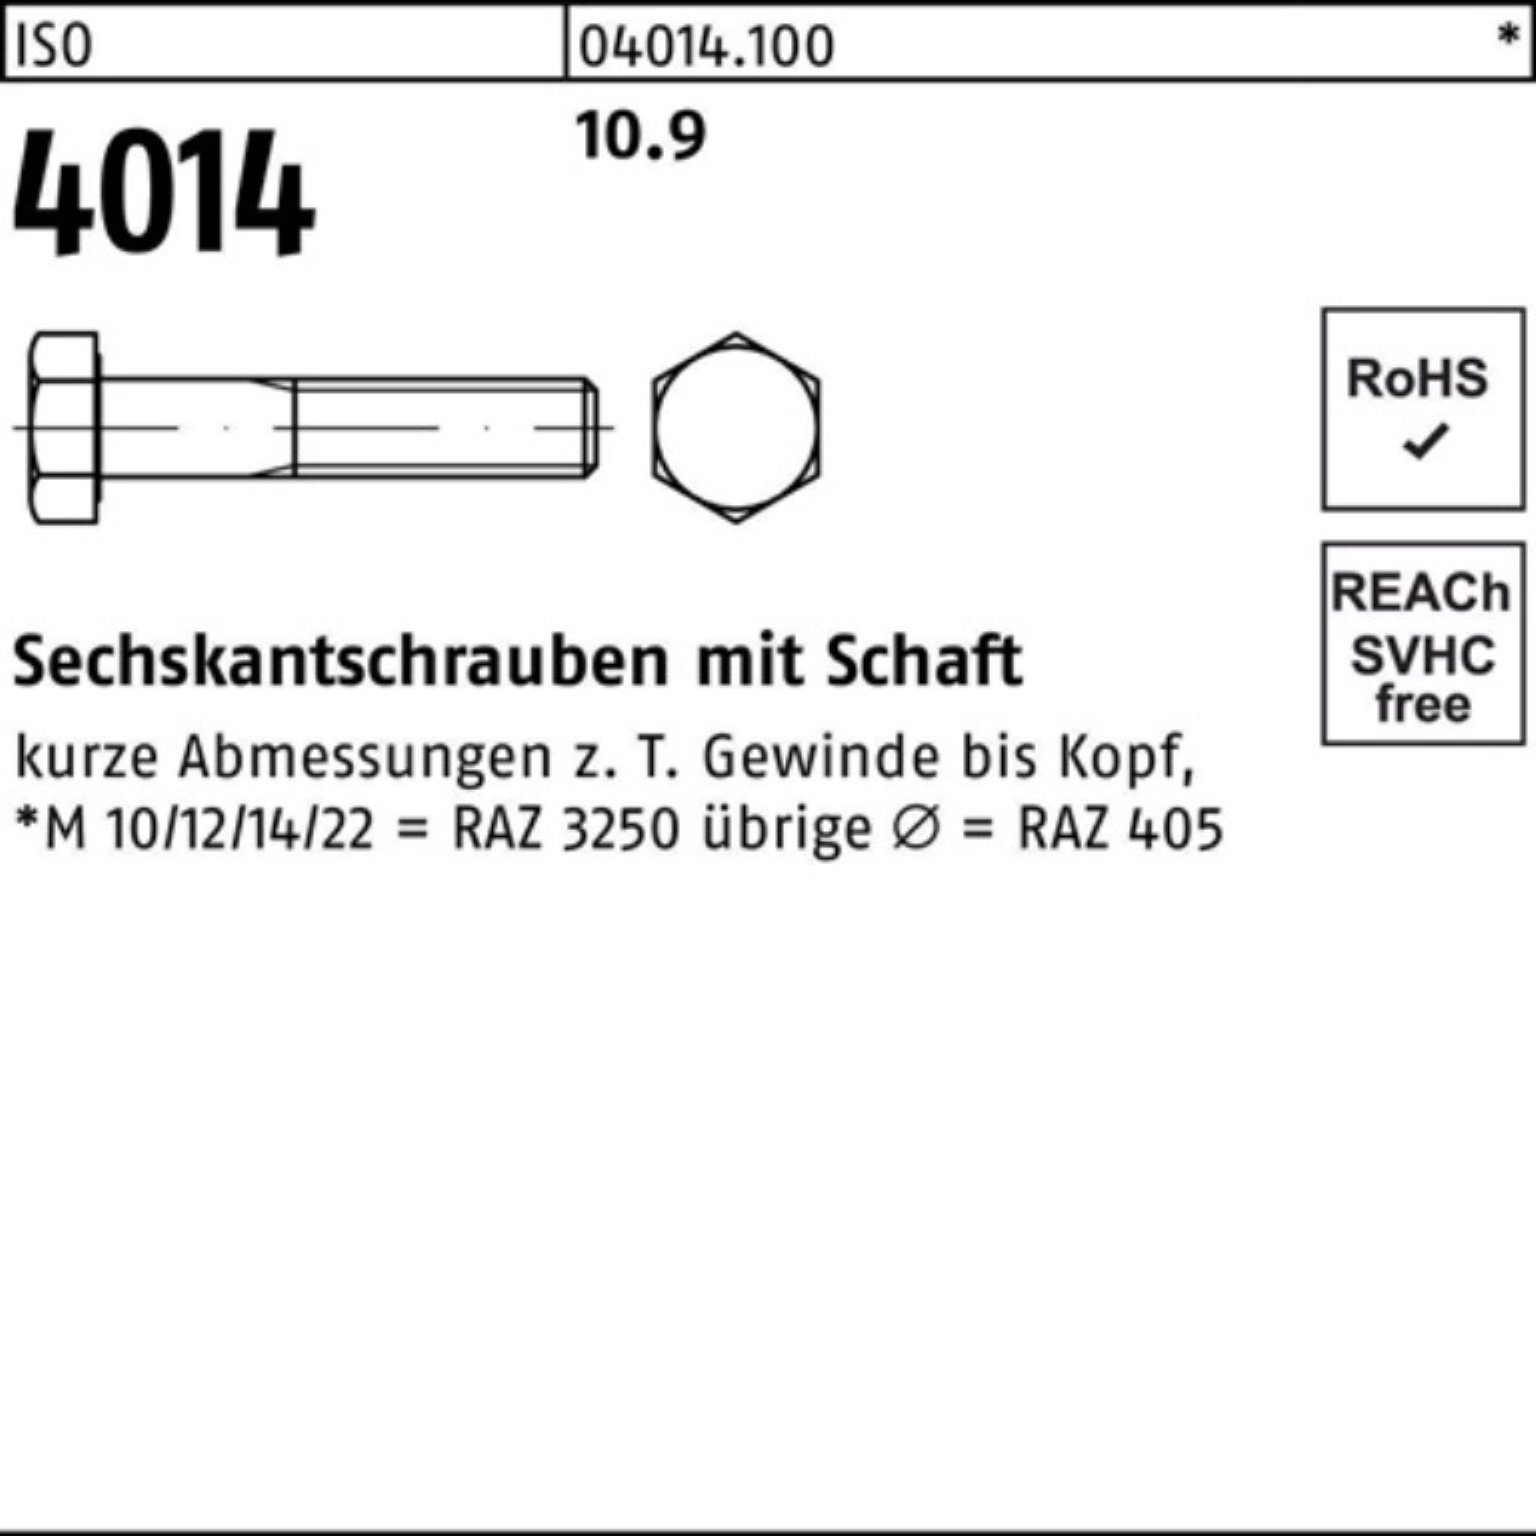 Bufab Sechskantschraube 200er Pack Sechskantschraube 4014 200 Schaft 90 10.9 Stück IS M6x ISO